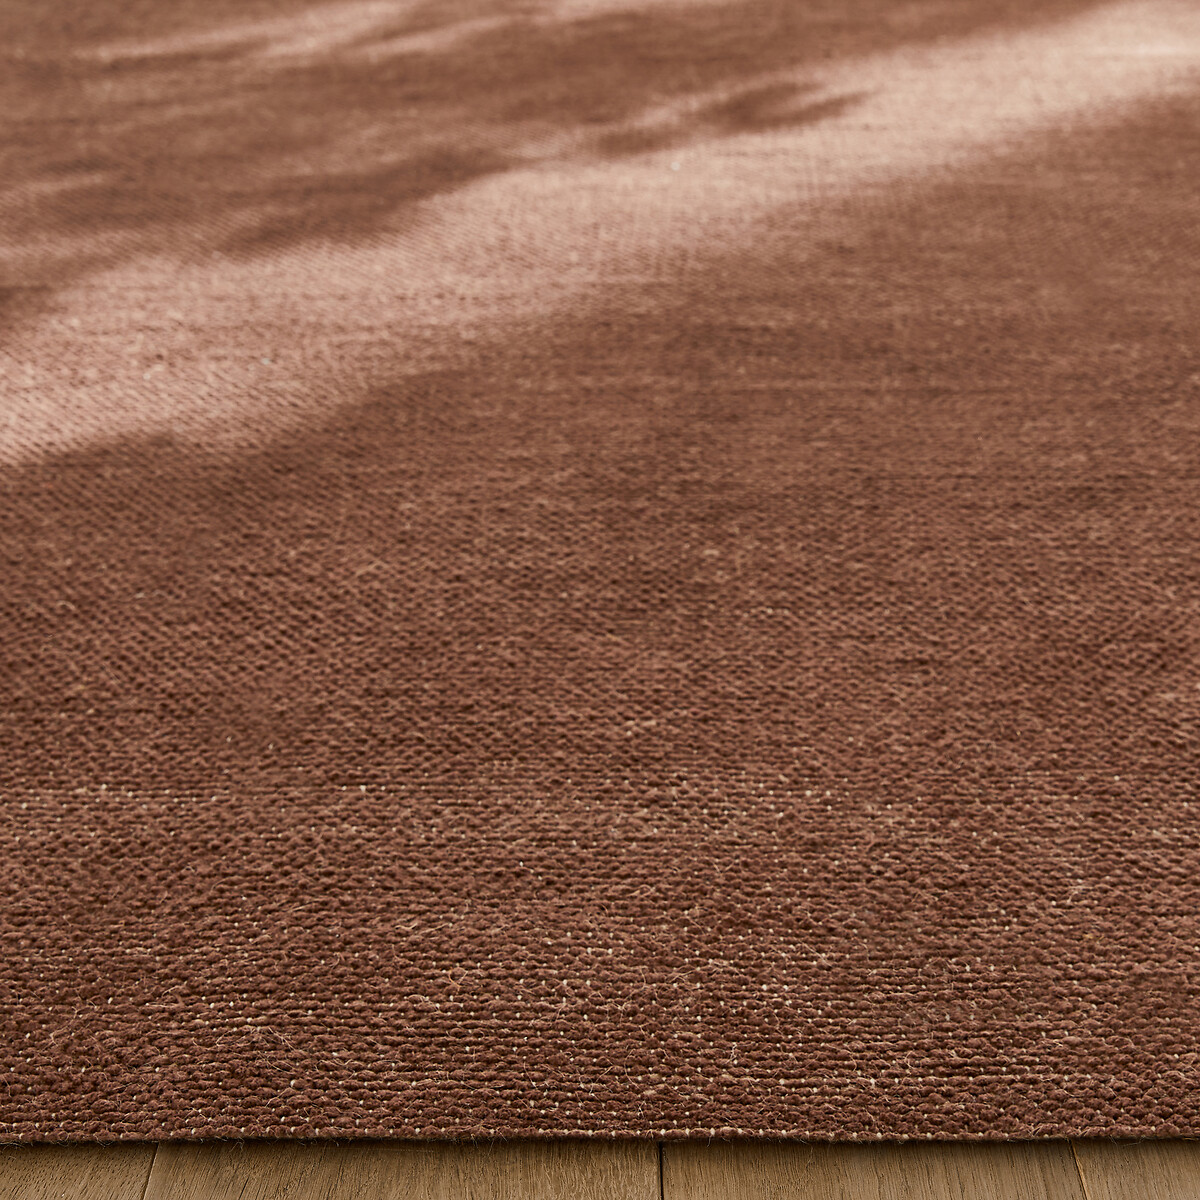 Ковер Сотканный вручную из хлопка и джута Yesit 200 x 290 см бежевый LaRedoute, размер 200 x 290 см - фото 2